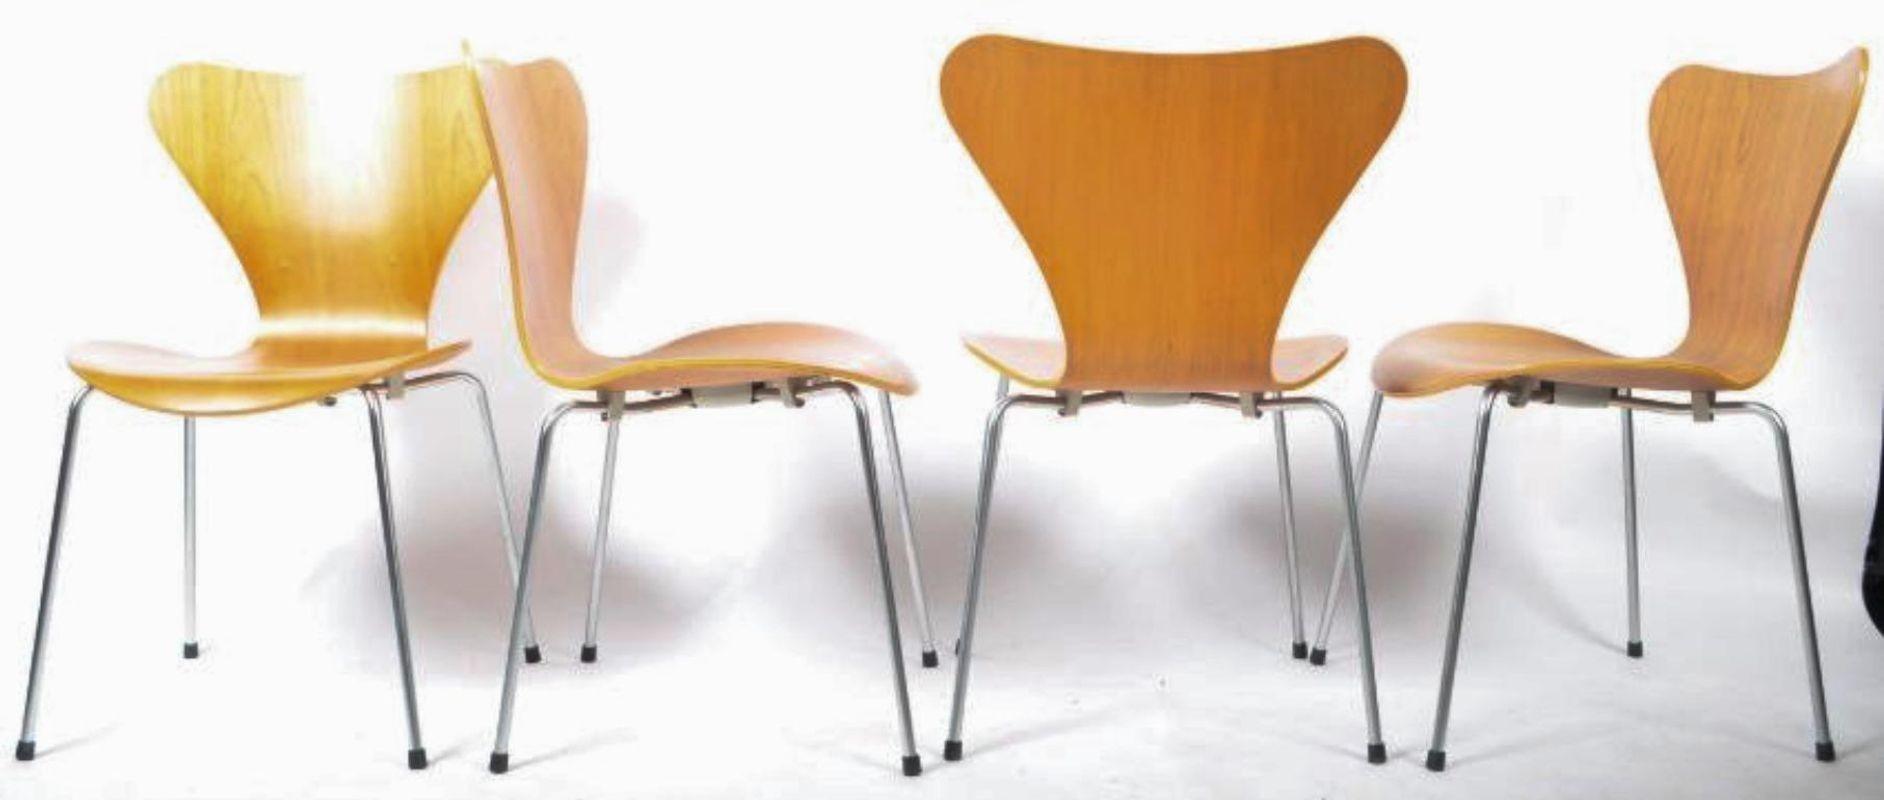 Ein Satz von vier skandinavischen modernen Bugholz-Esszimmerstühlen, bekannt als Serie 7 oder Modell 3107, Stühle. In schönem Kirschbaumfurnier auf Schichtholz, auf gebürsteten Stahlbeinen mit schwarzen Gummifüßen. Mit Label auf der Unterseite